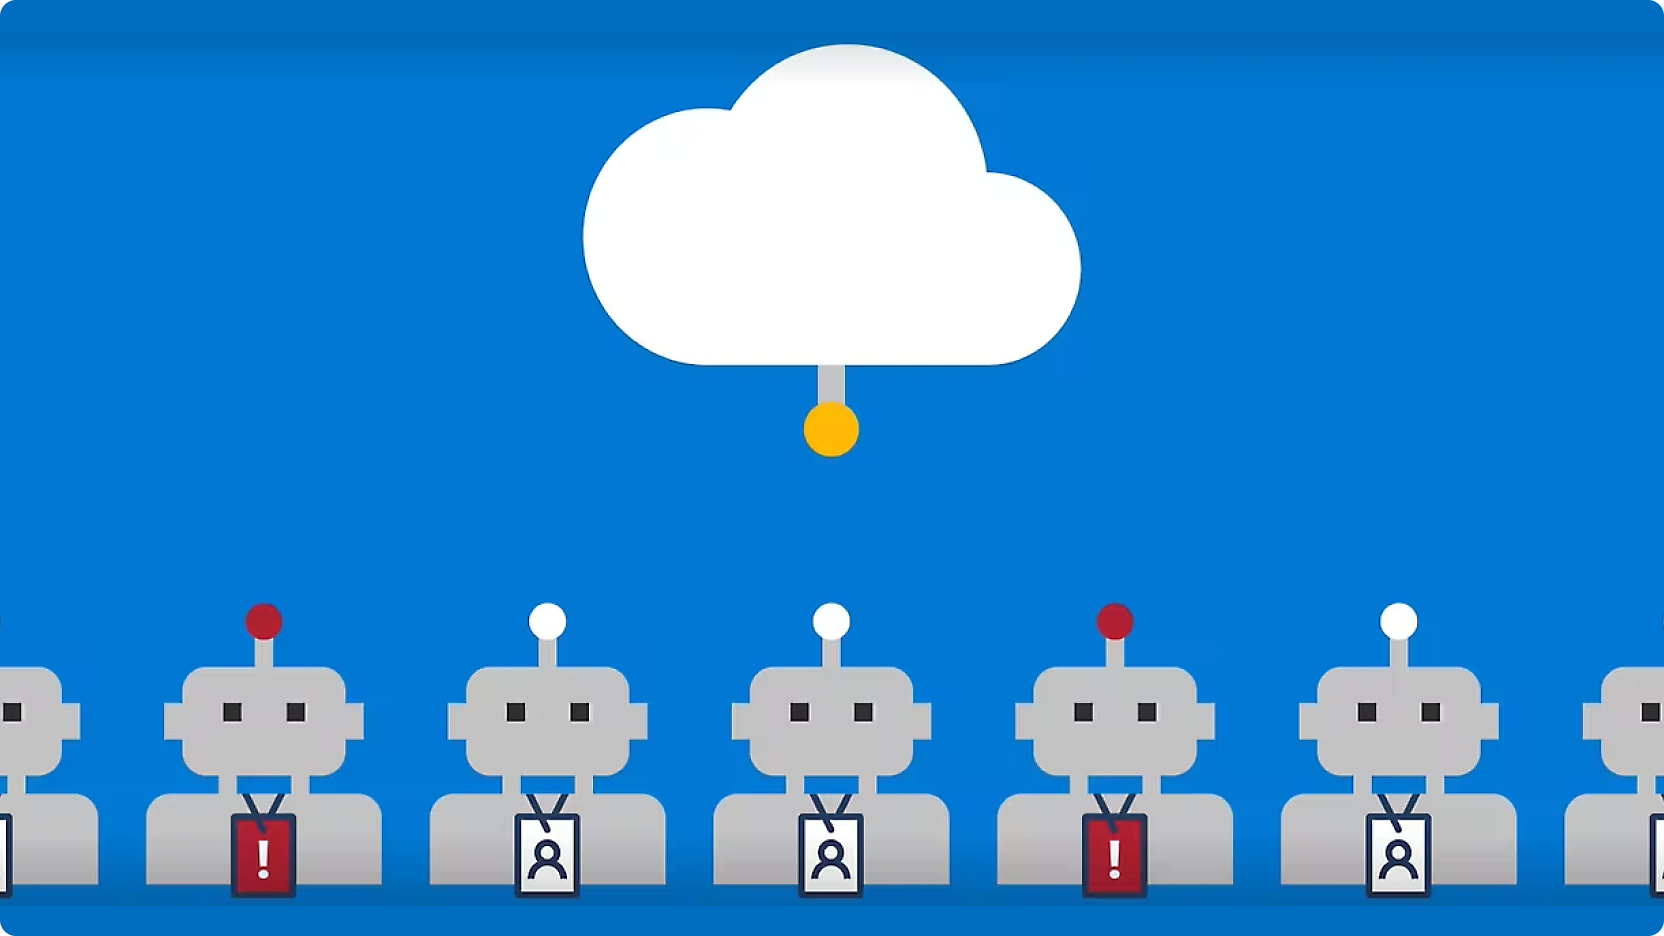 Gráfico ilustrando linhas de robôs com botões vermelhos na cabeça, conectados por linhas a uma nuvem central